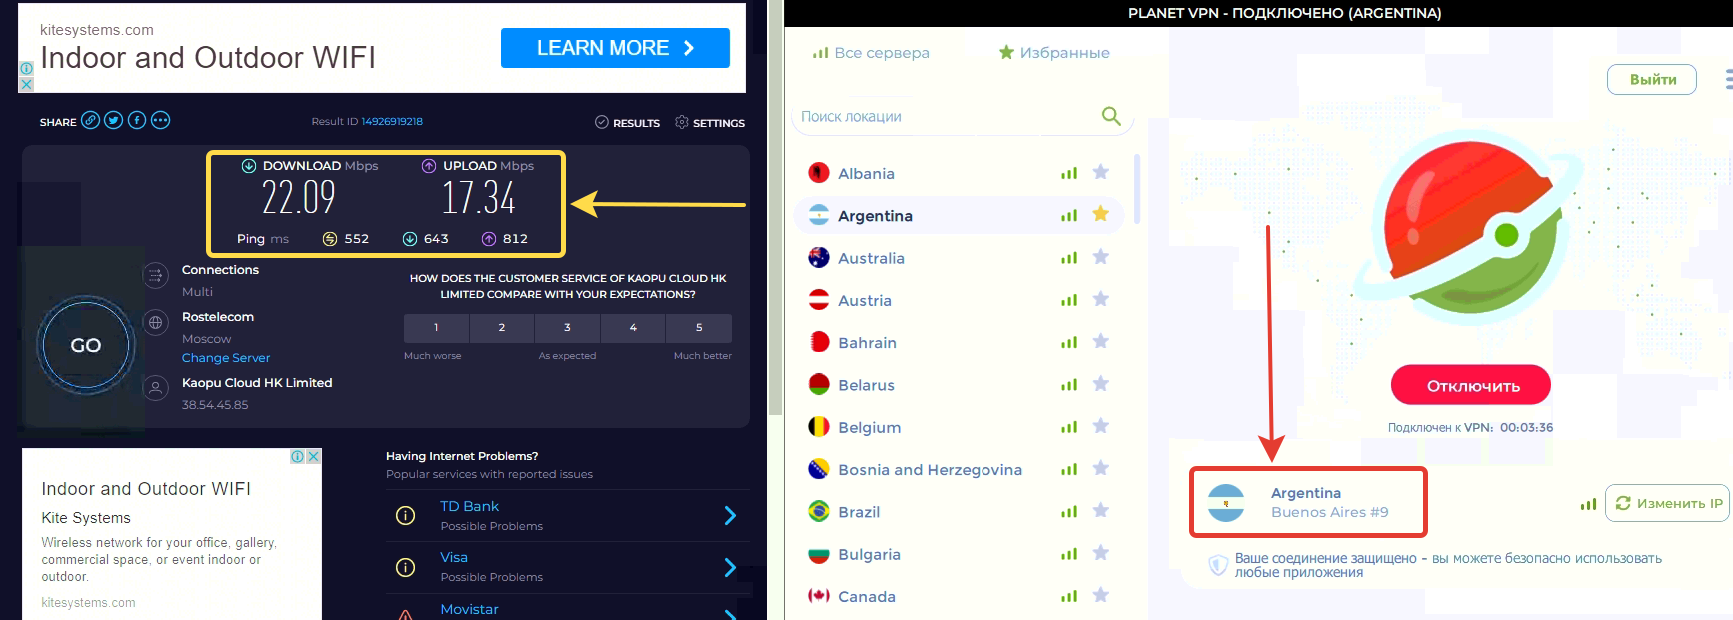 Тестирование скорости при подключении к VPN-серверу Argentina в Planet VPN.